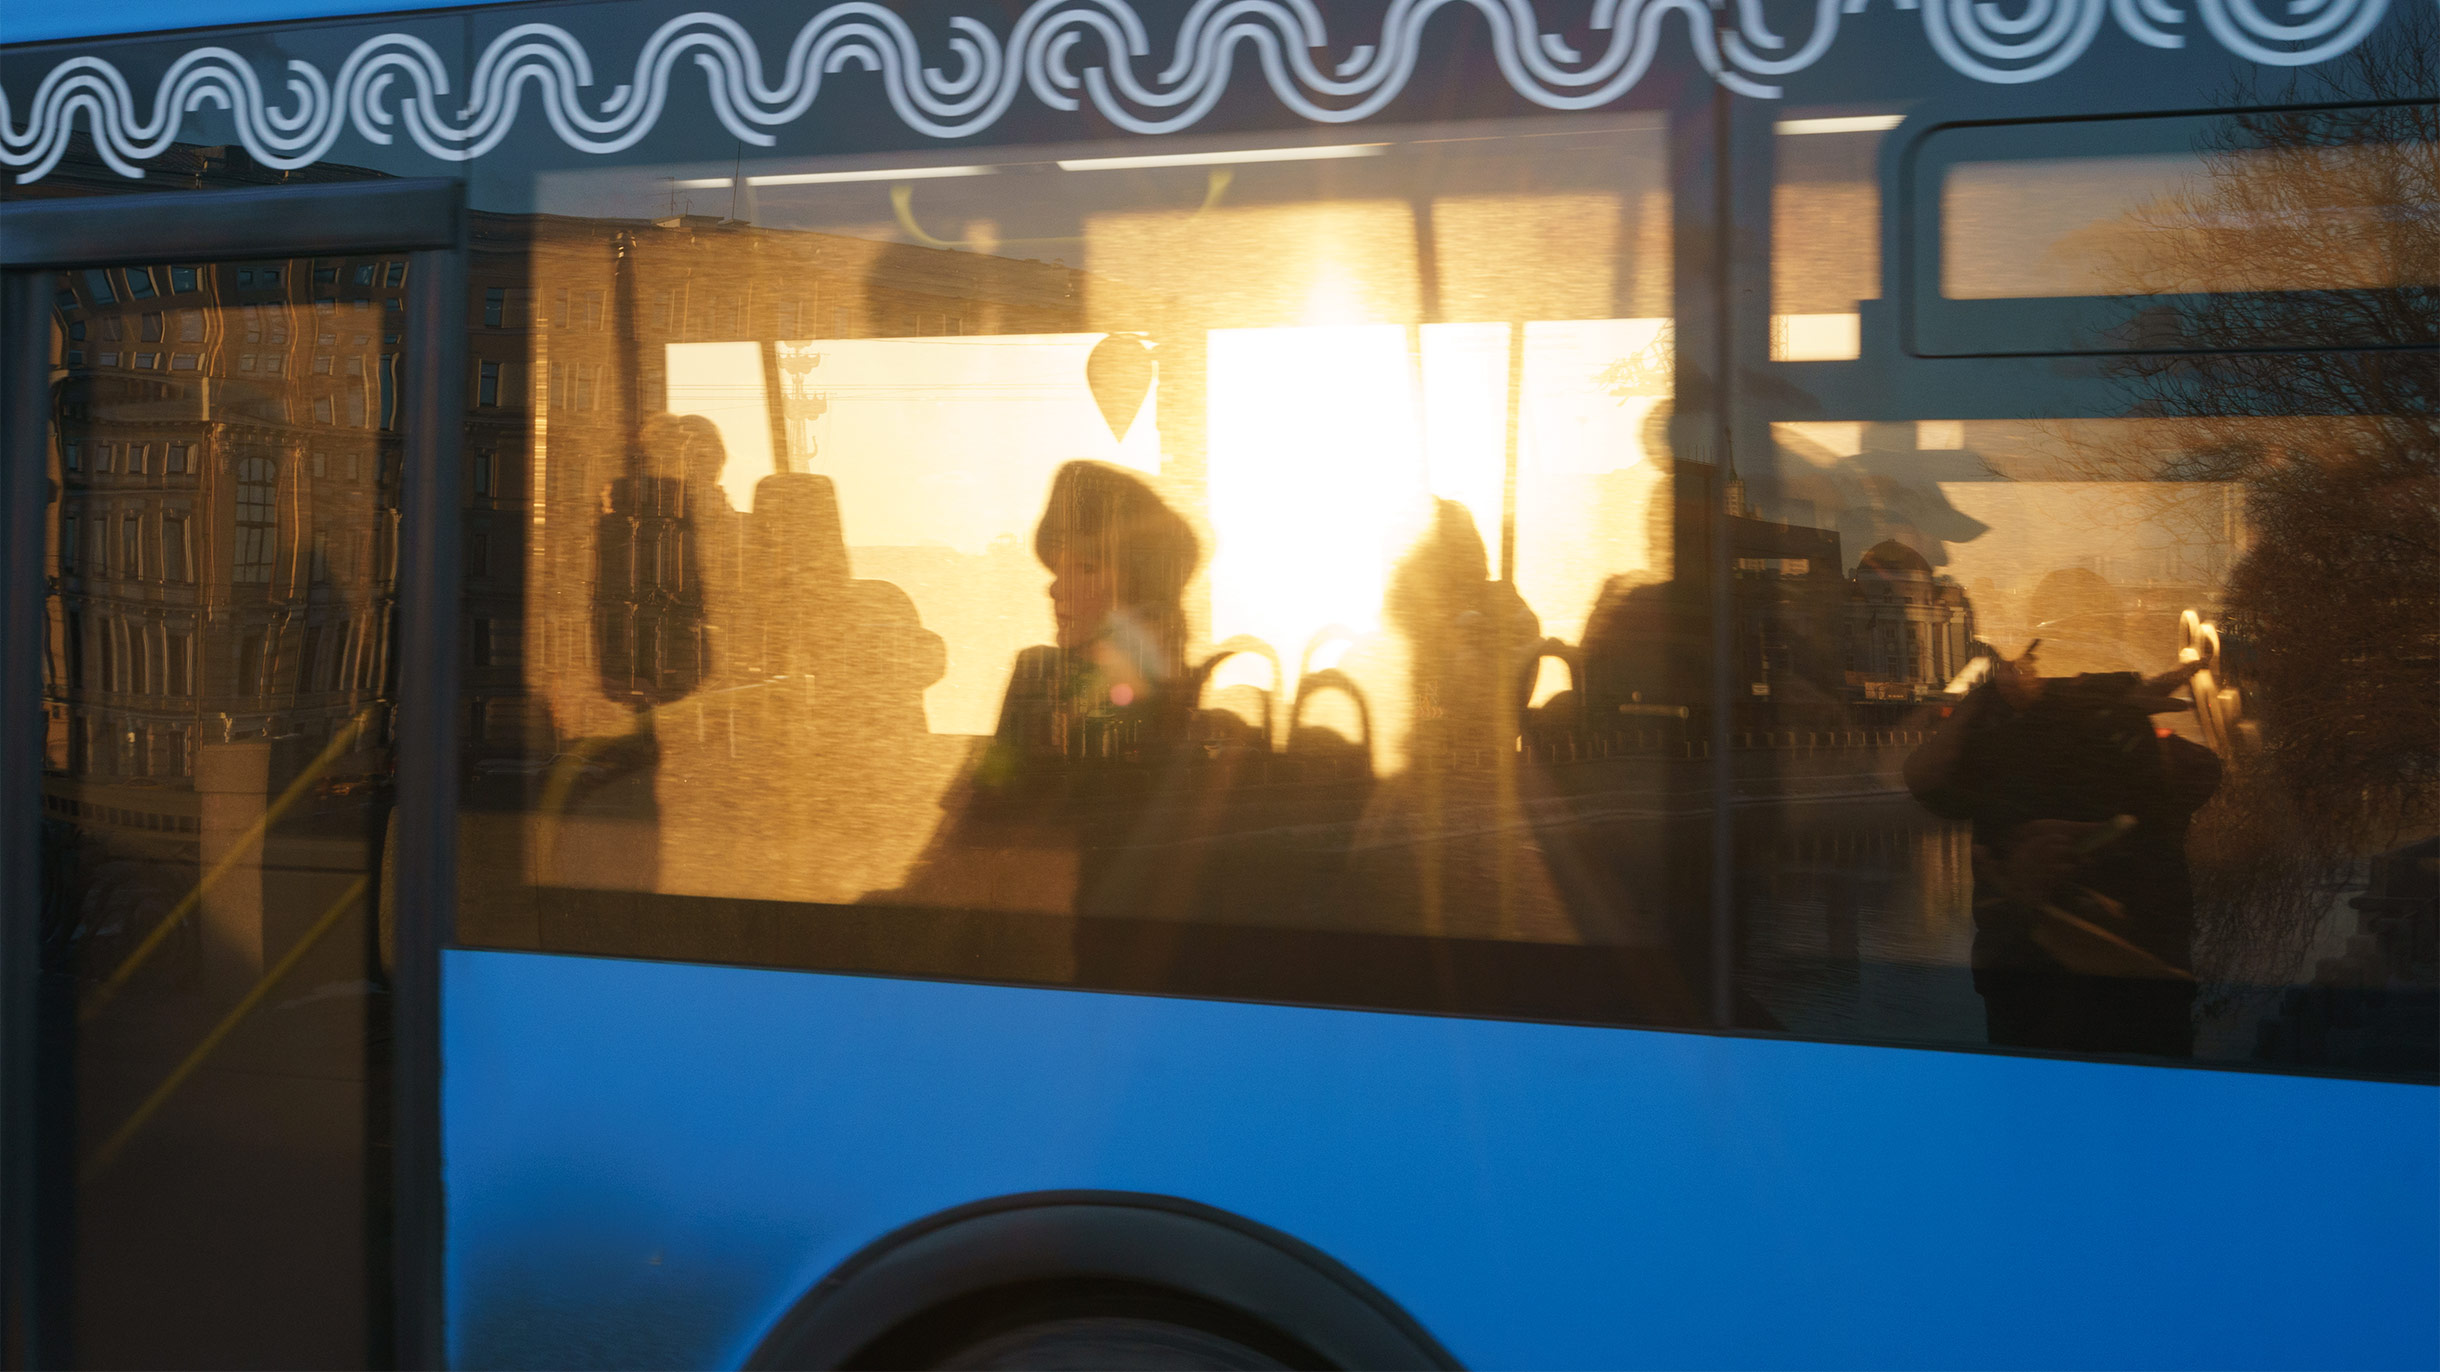 Права пассажиров автобусов, троллейбусов и трамваев